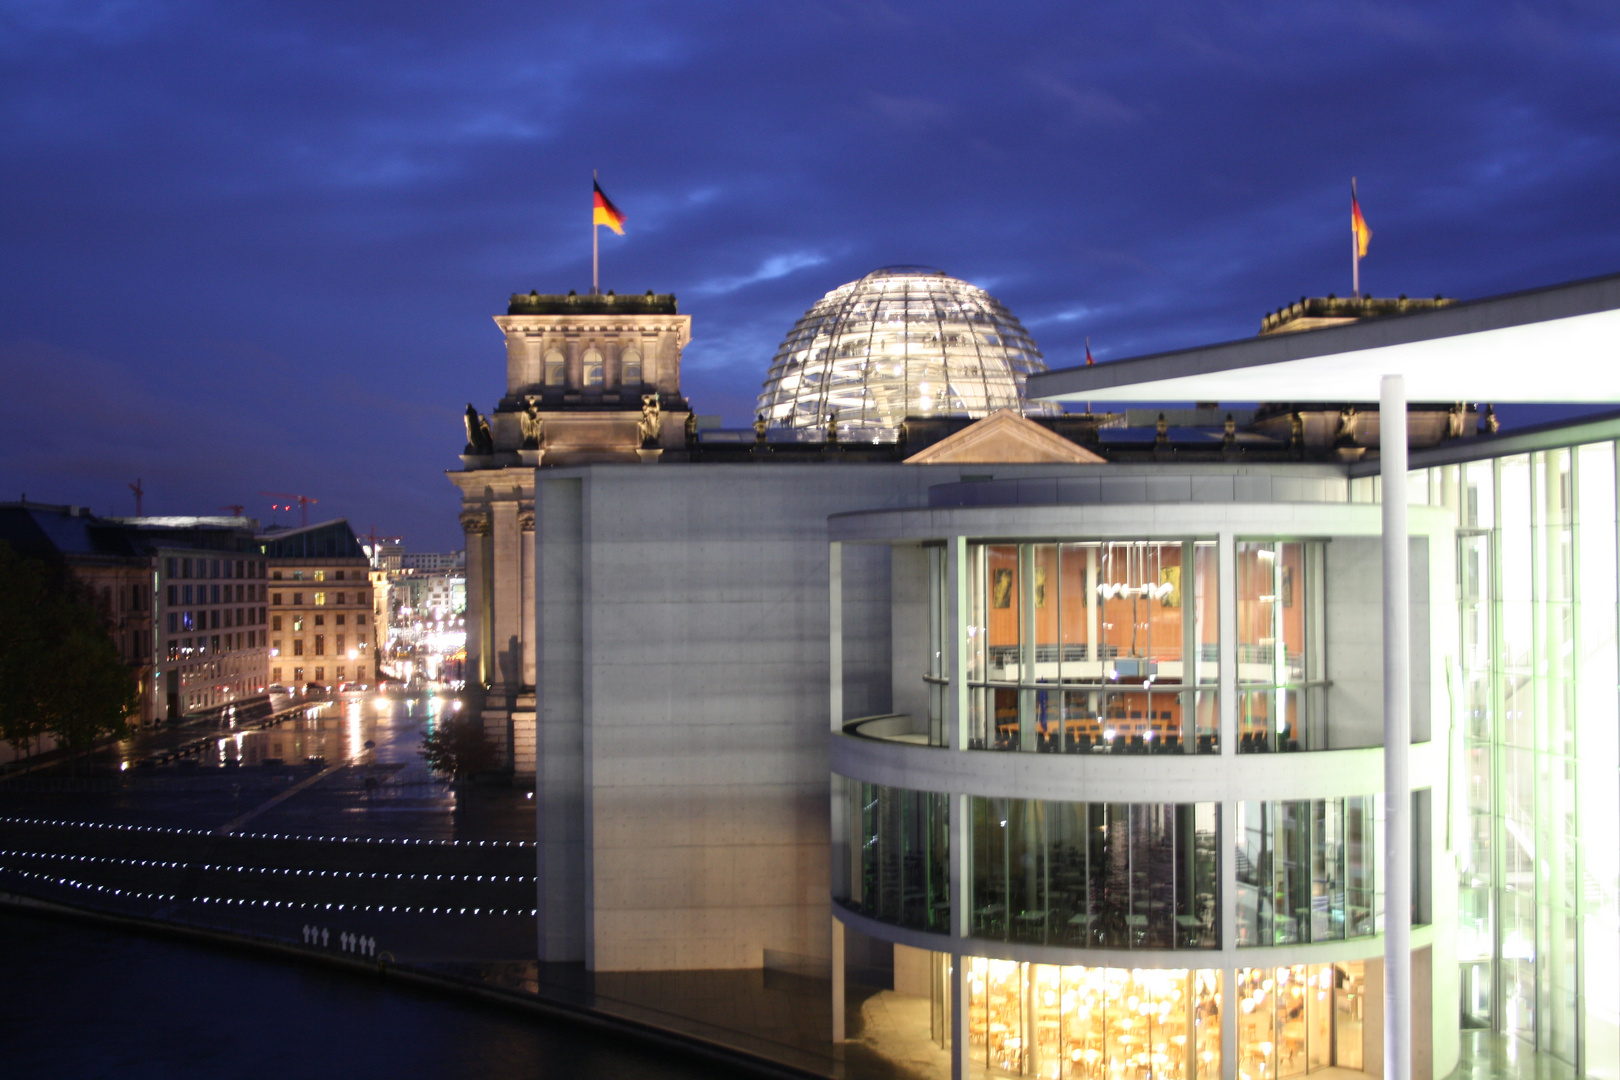 Bundestag bei Nacht